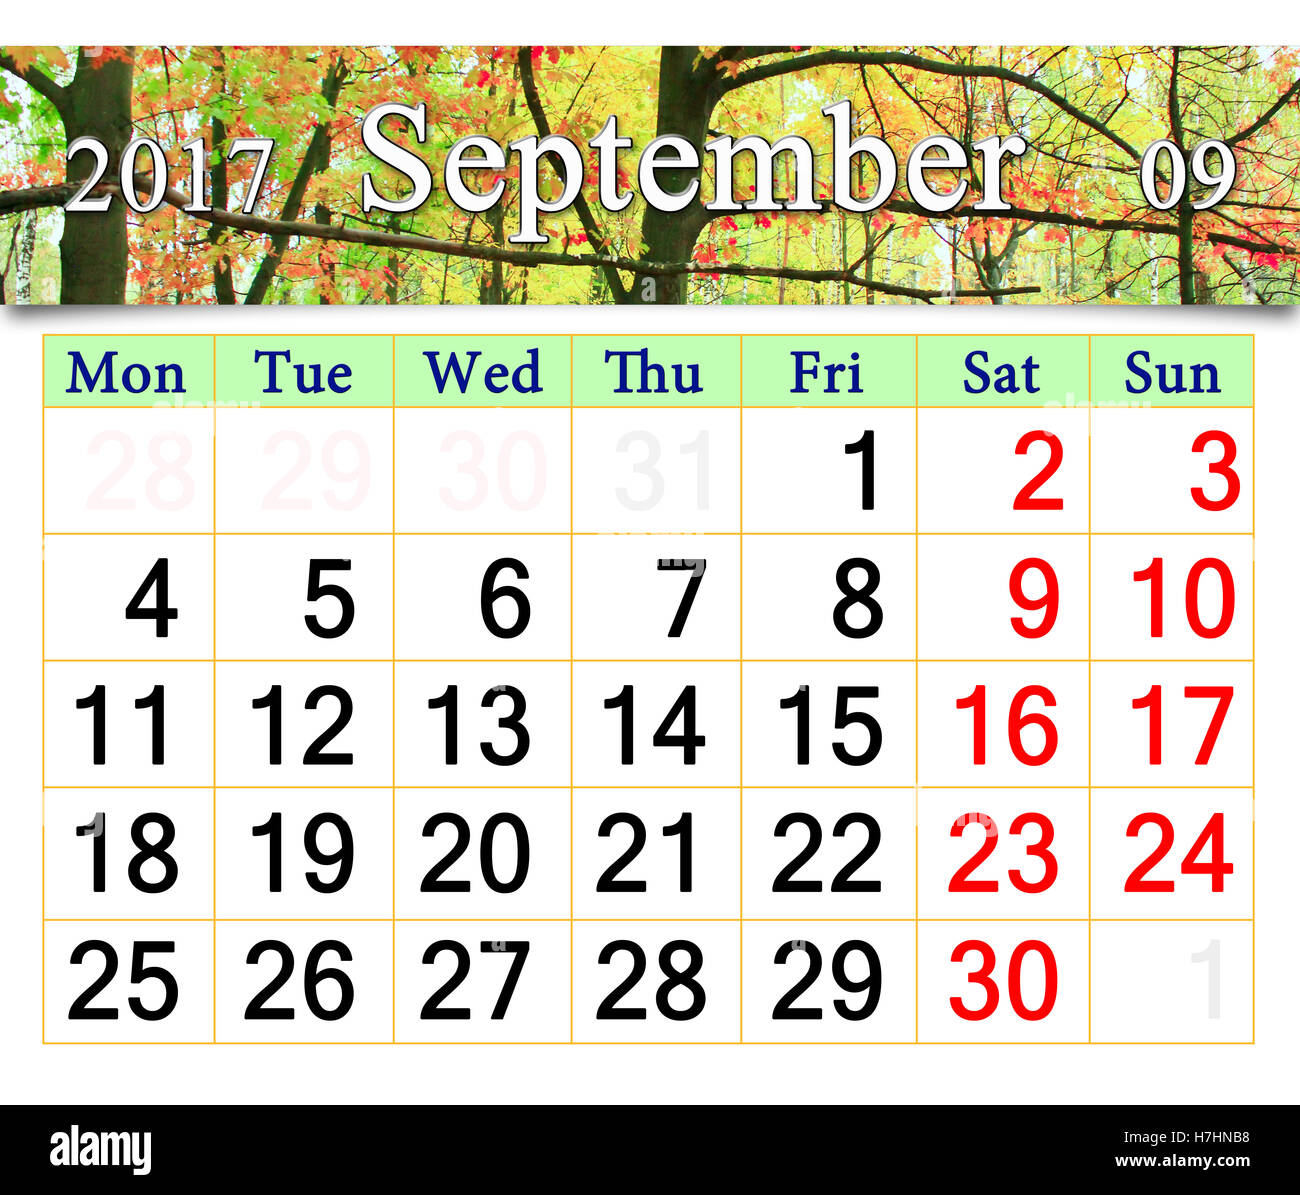 Calendario de septiembre de 2017 con el parque otoñal con verde y amarillo, arces y robles Foto de stock